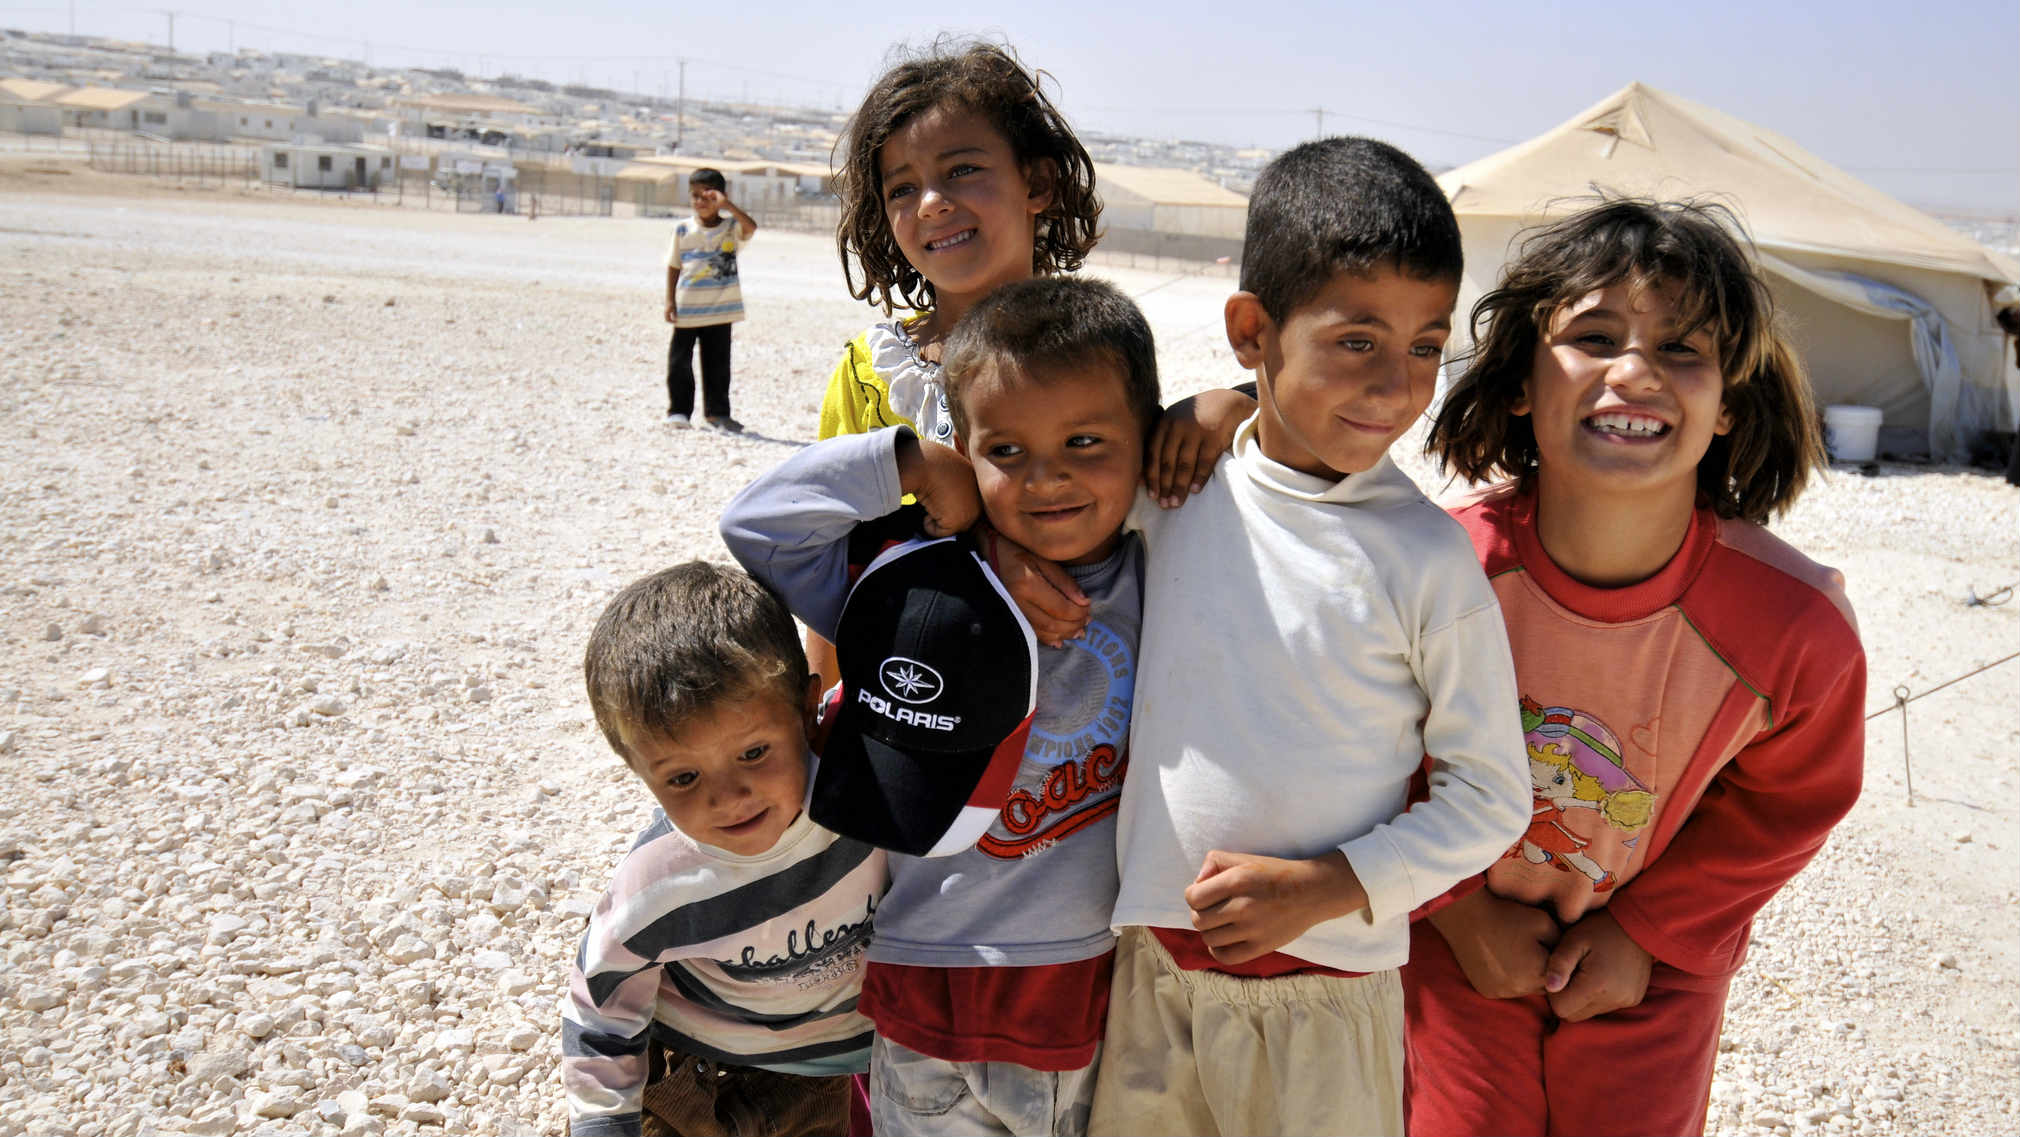 عشرات الآلاف من الأطفال السوريين يعانون من انعدام الجنسية بسبب الحرب (Flickr)